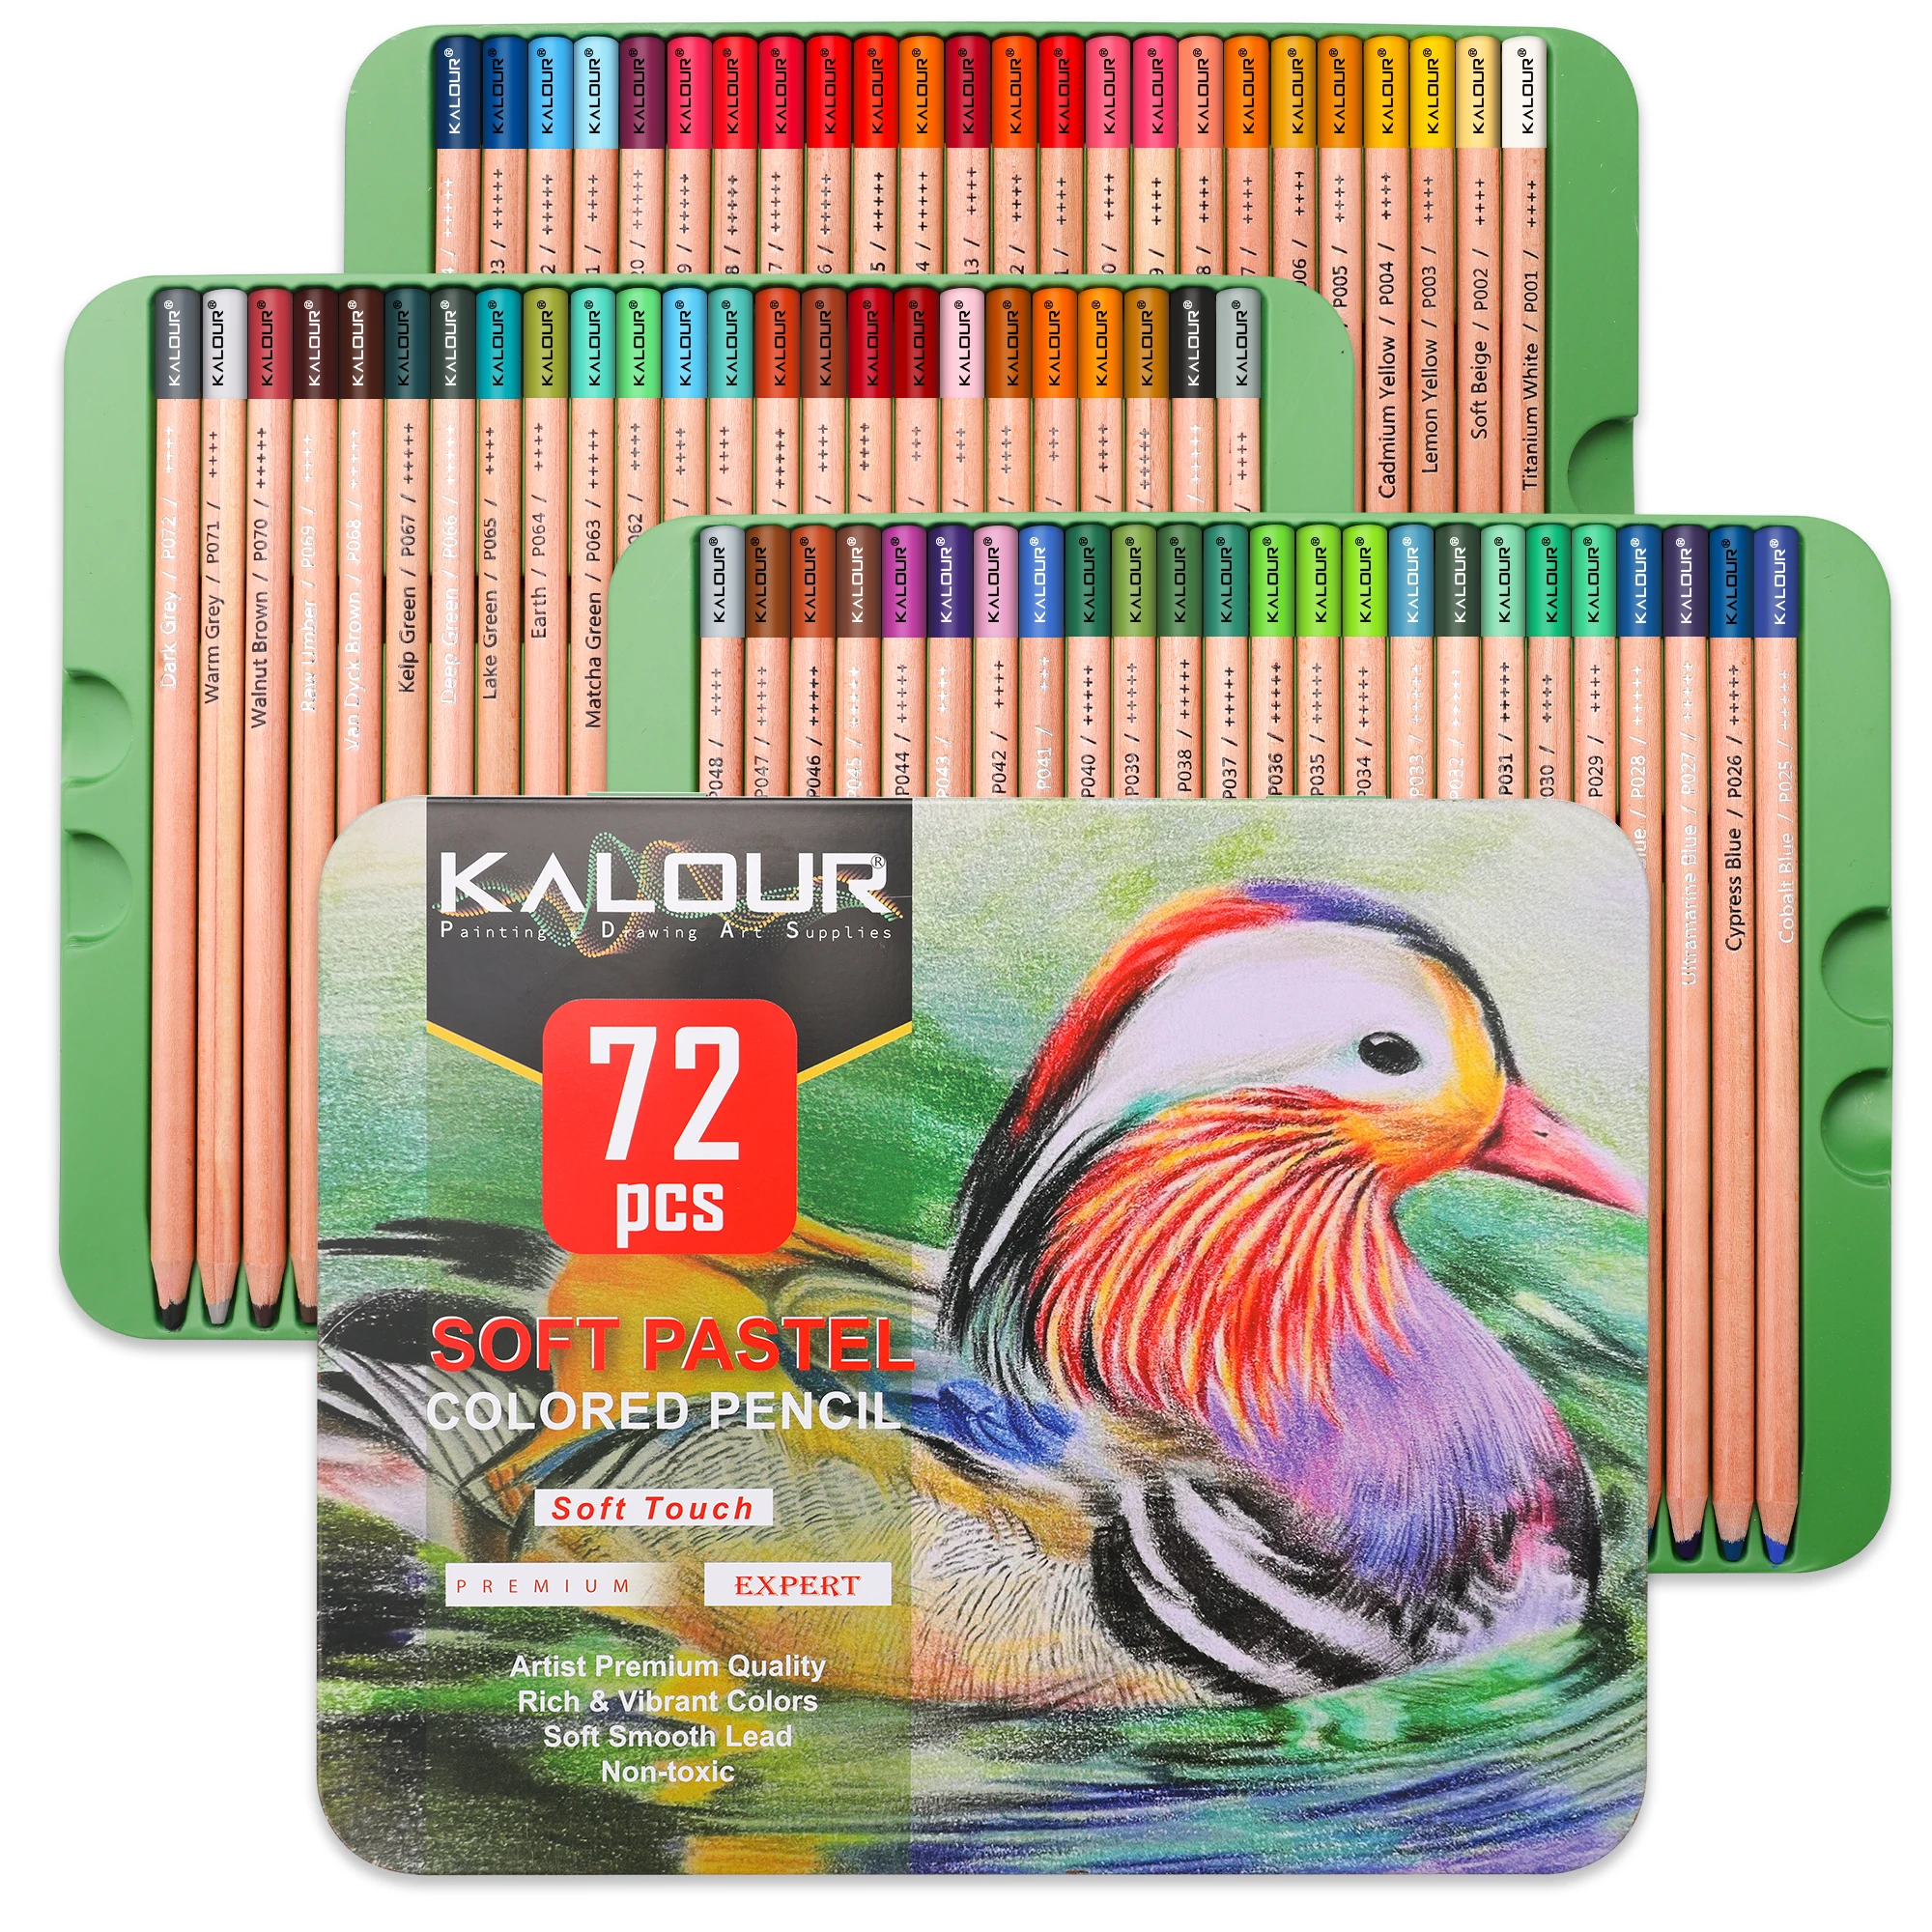 KALOUR-lápiz de carbón para principiantes y artistas profesionales, 50/72 piezas, colores vibrantes, núcleo suave, color Pastel, caja de lata